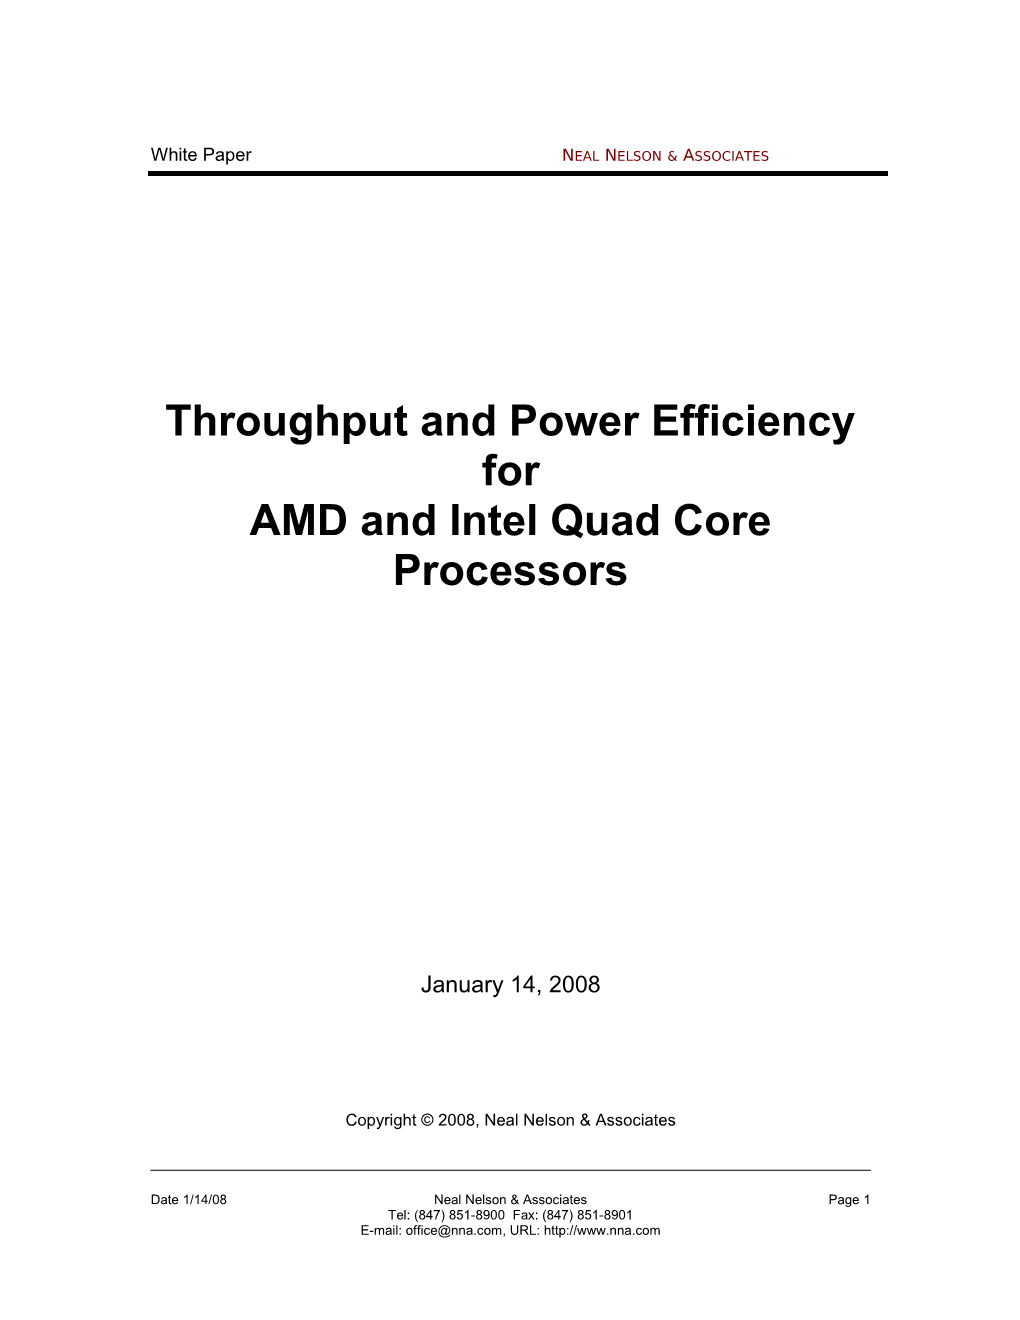 White Paper: AMD/Intel Quad Core Comparisonneal NELSON ASSOCIATES